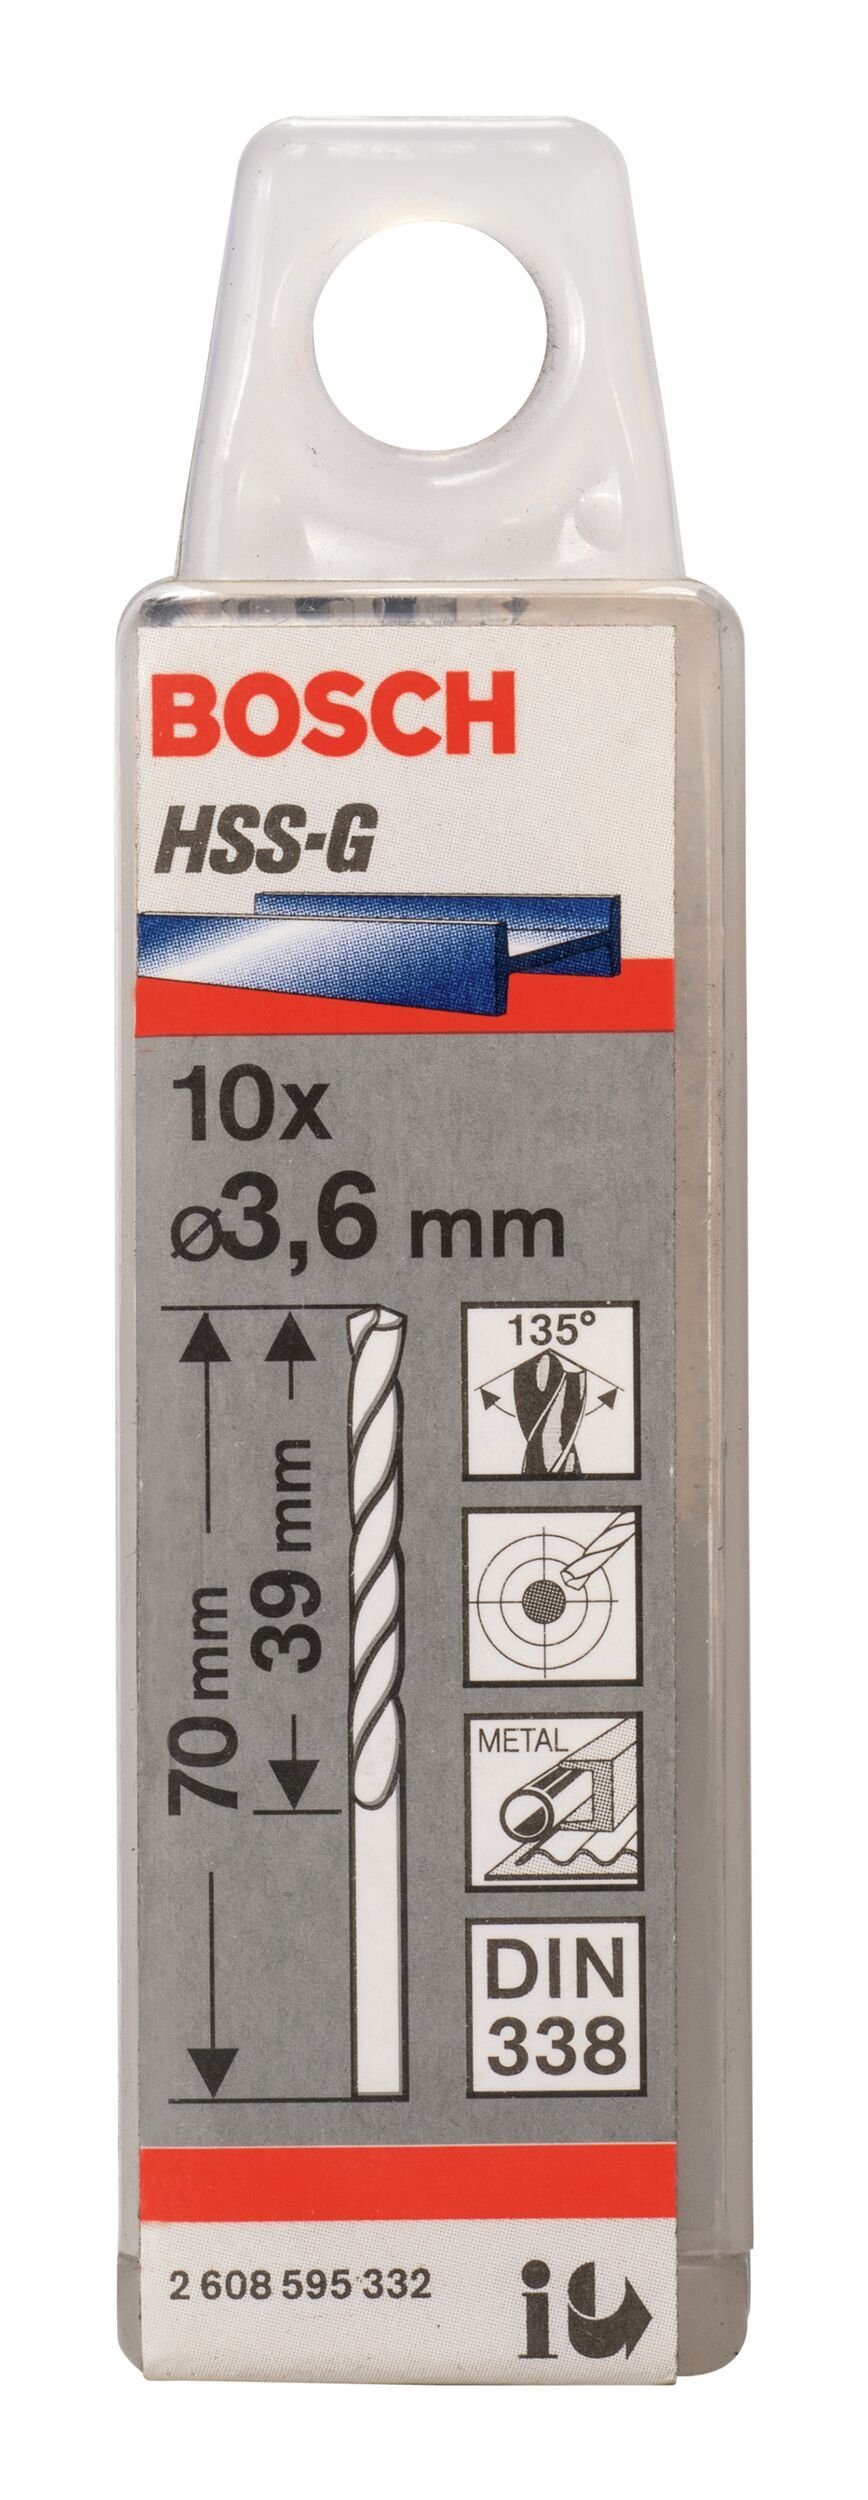 x 3,6 39 70 - Stück), 10er-Pack (10 - BOSCH HSS-G mm Metallbohrer, 338) (DIN x